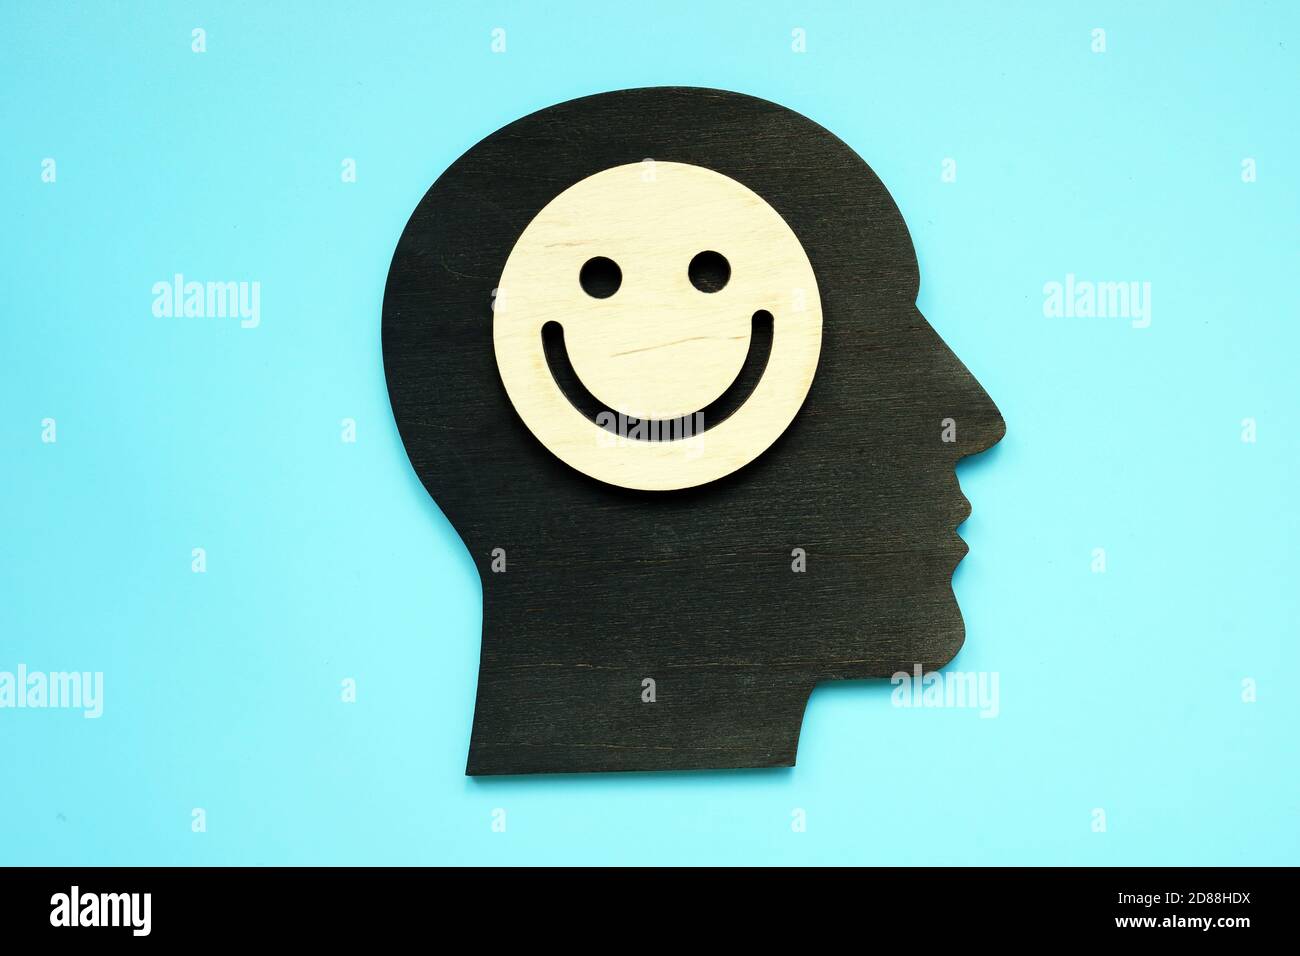 Concepto de pensamiento positivo. Forma de la cabeza y cara sonriente en ella. Foto de stock